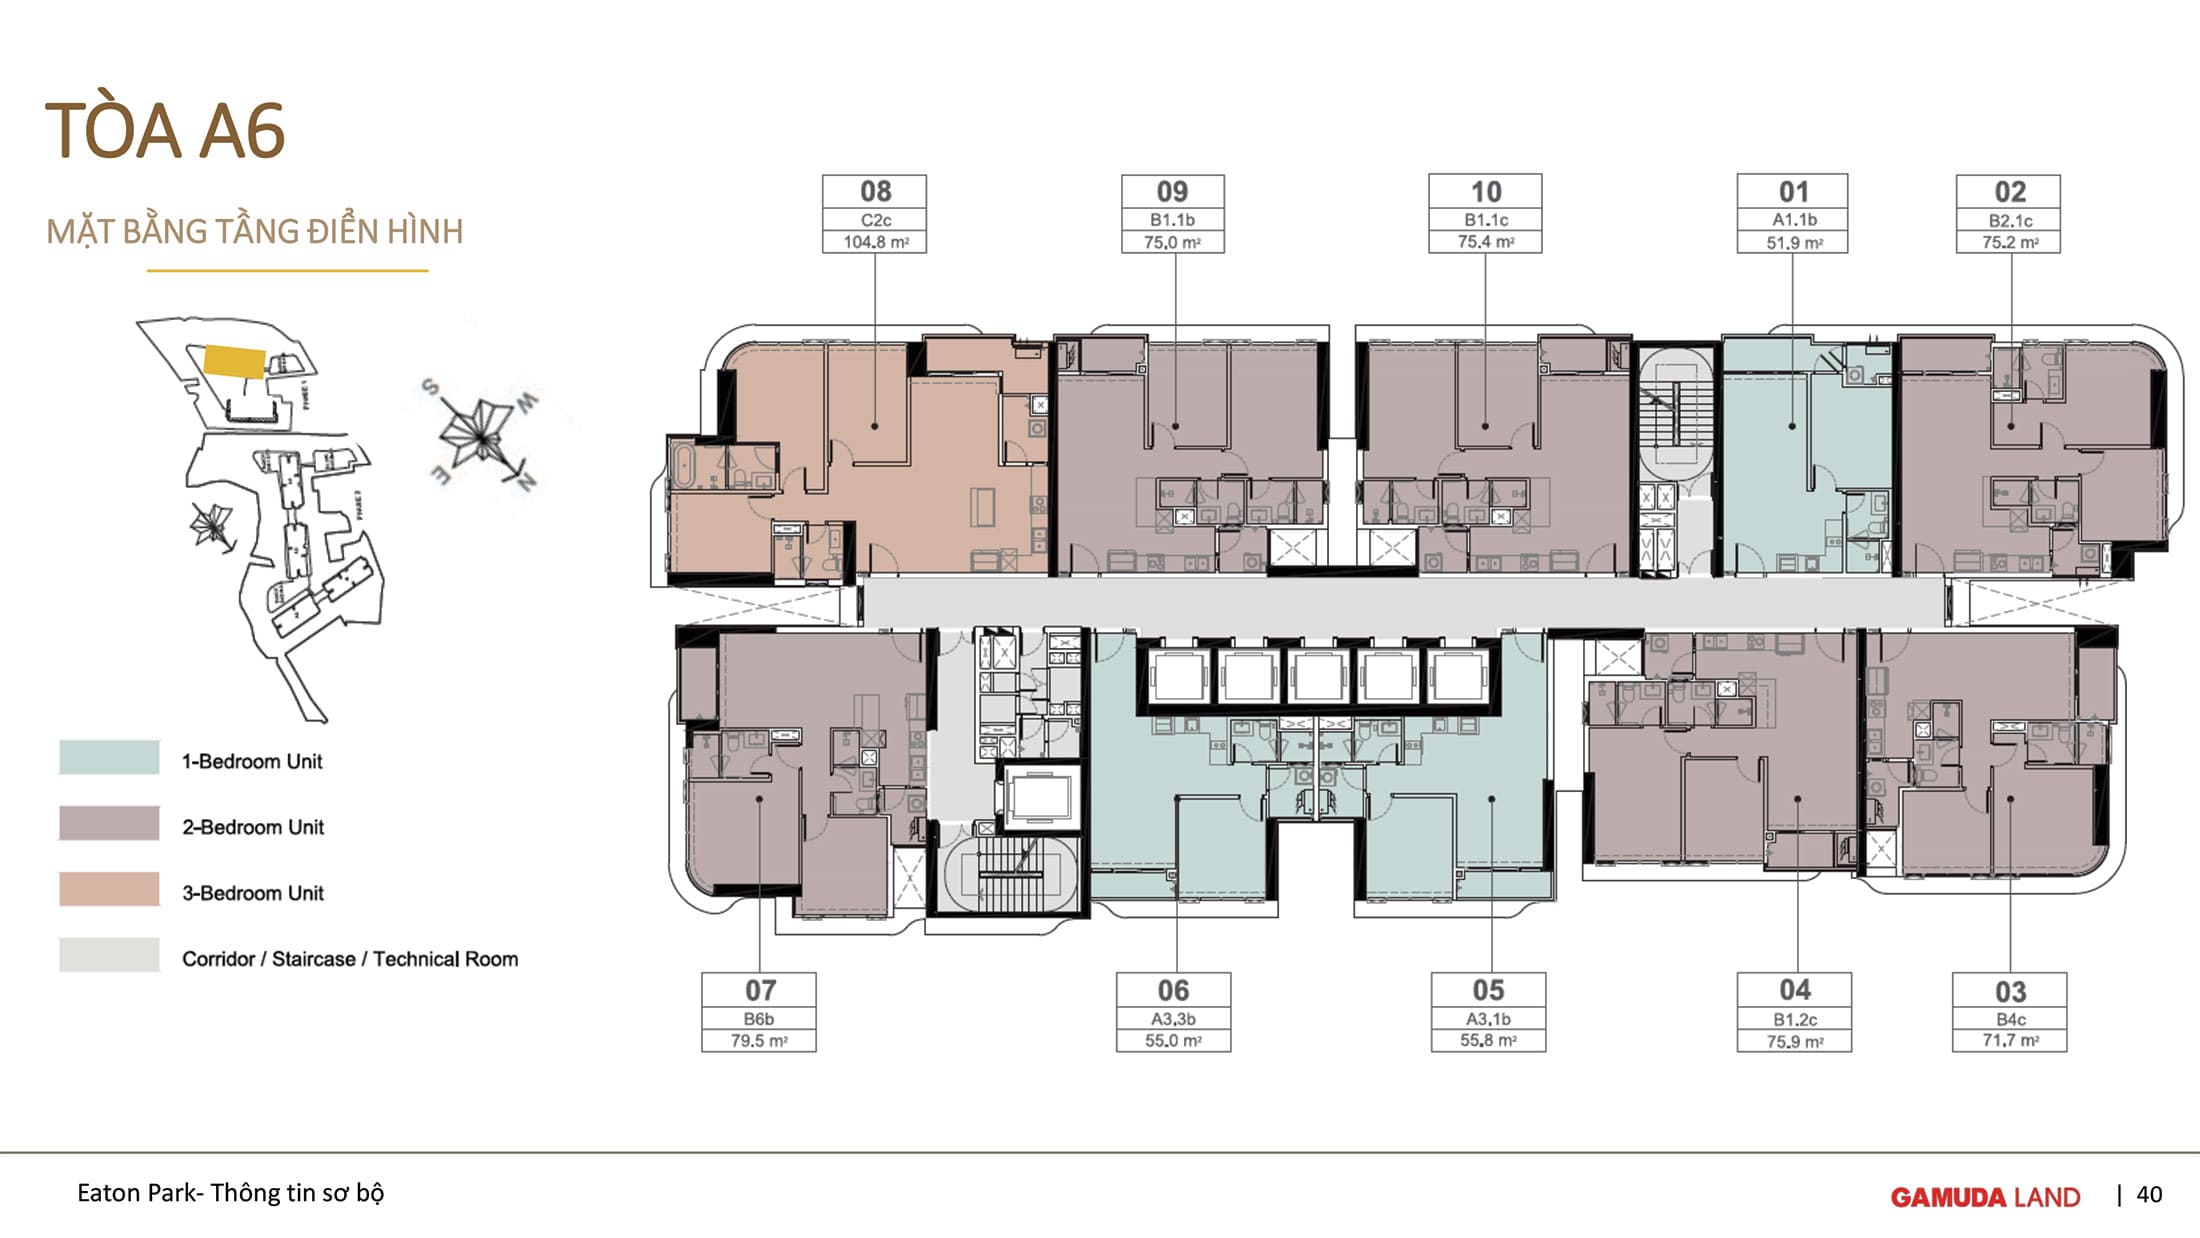 Mặt bằng tầng điển hình Tòa A6 dự án căn hộ Eaton Park được phát triển bởi Gamuda Land.